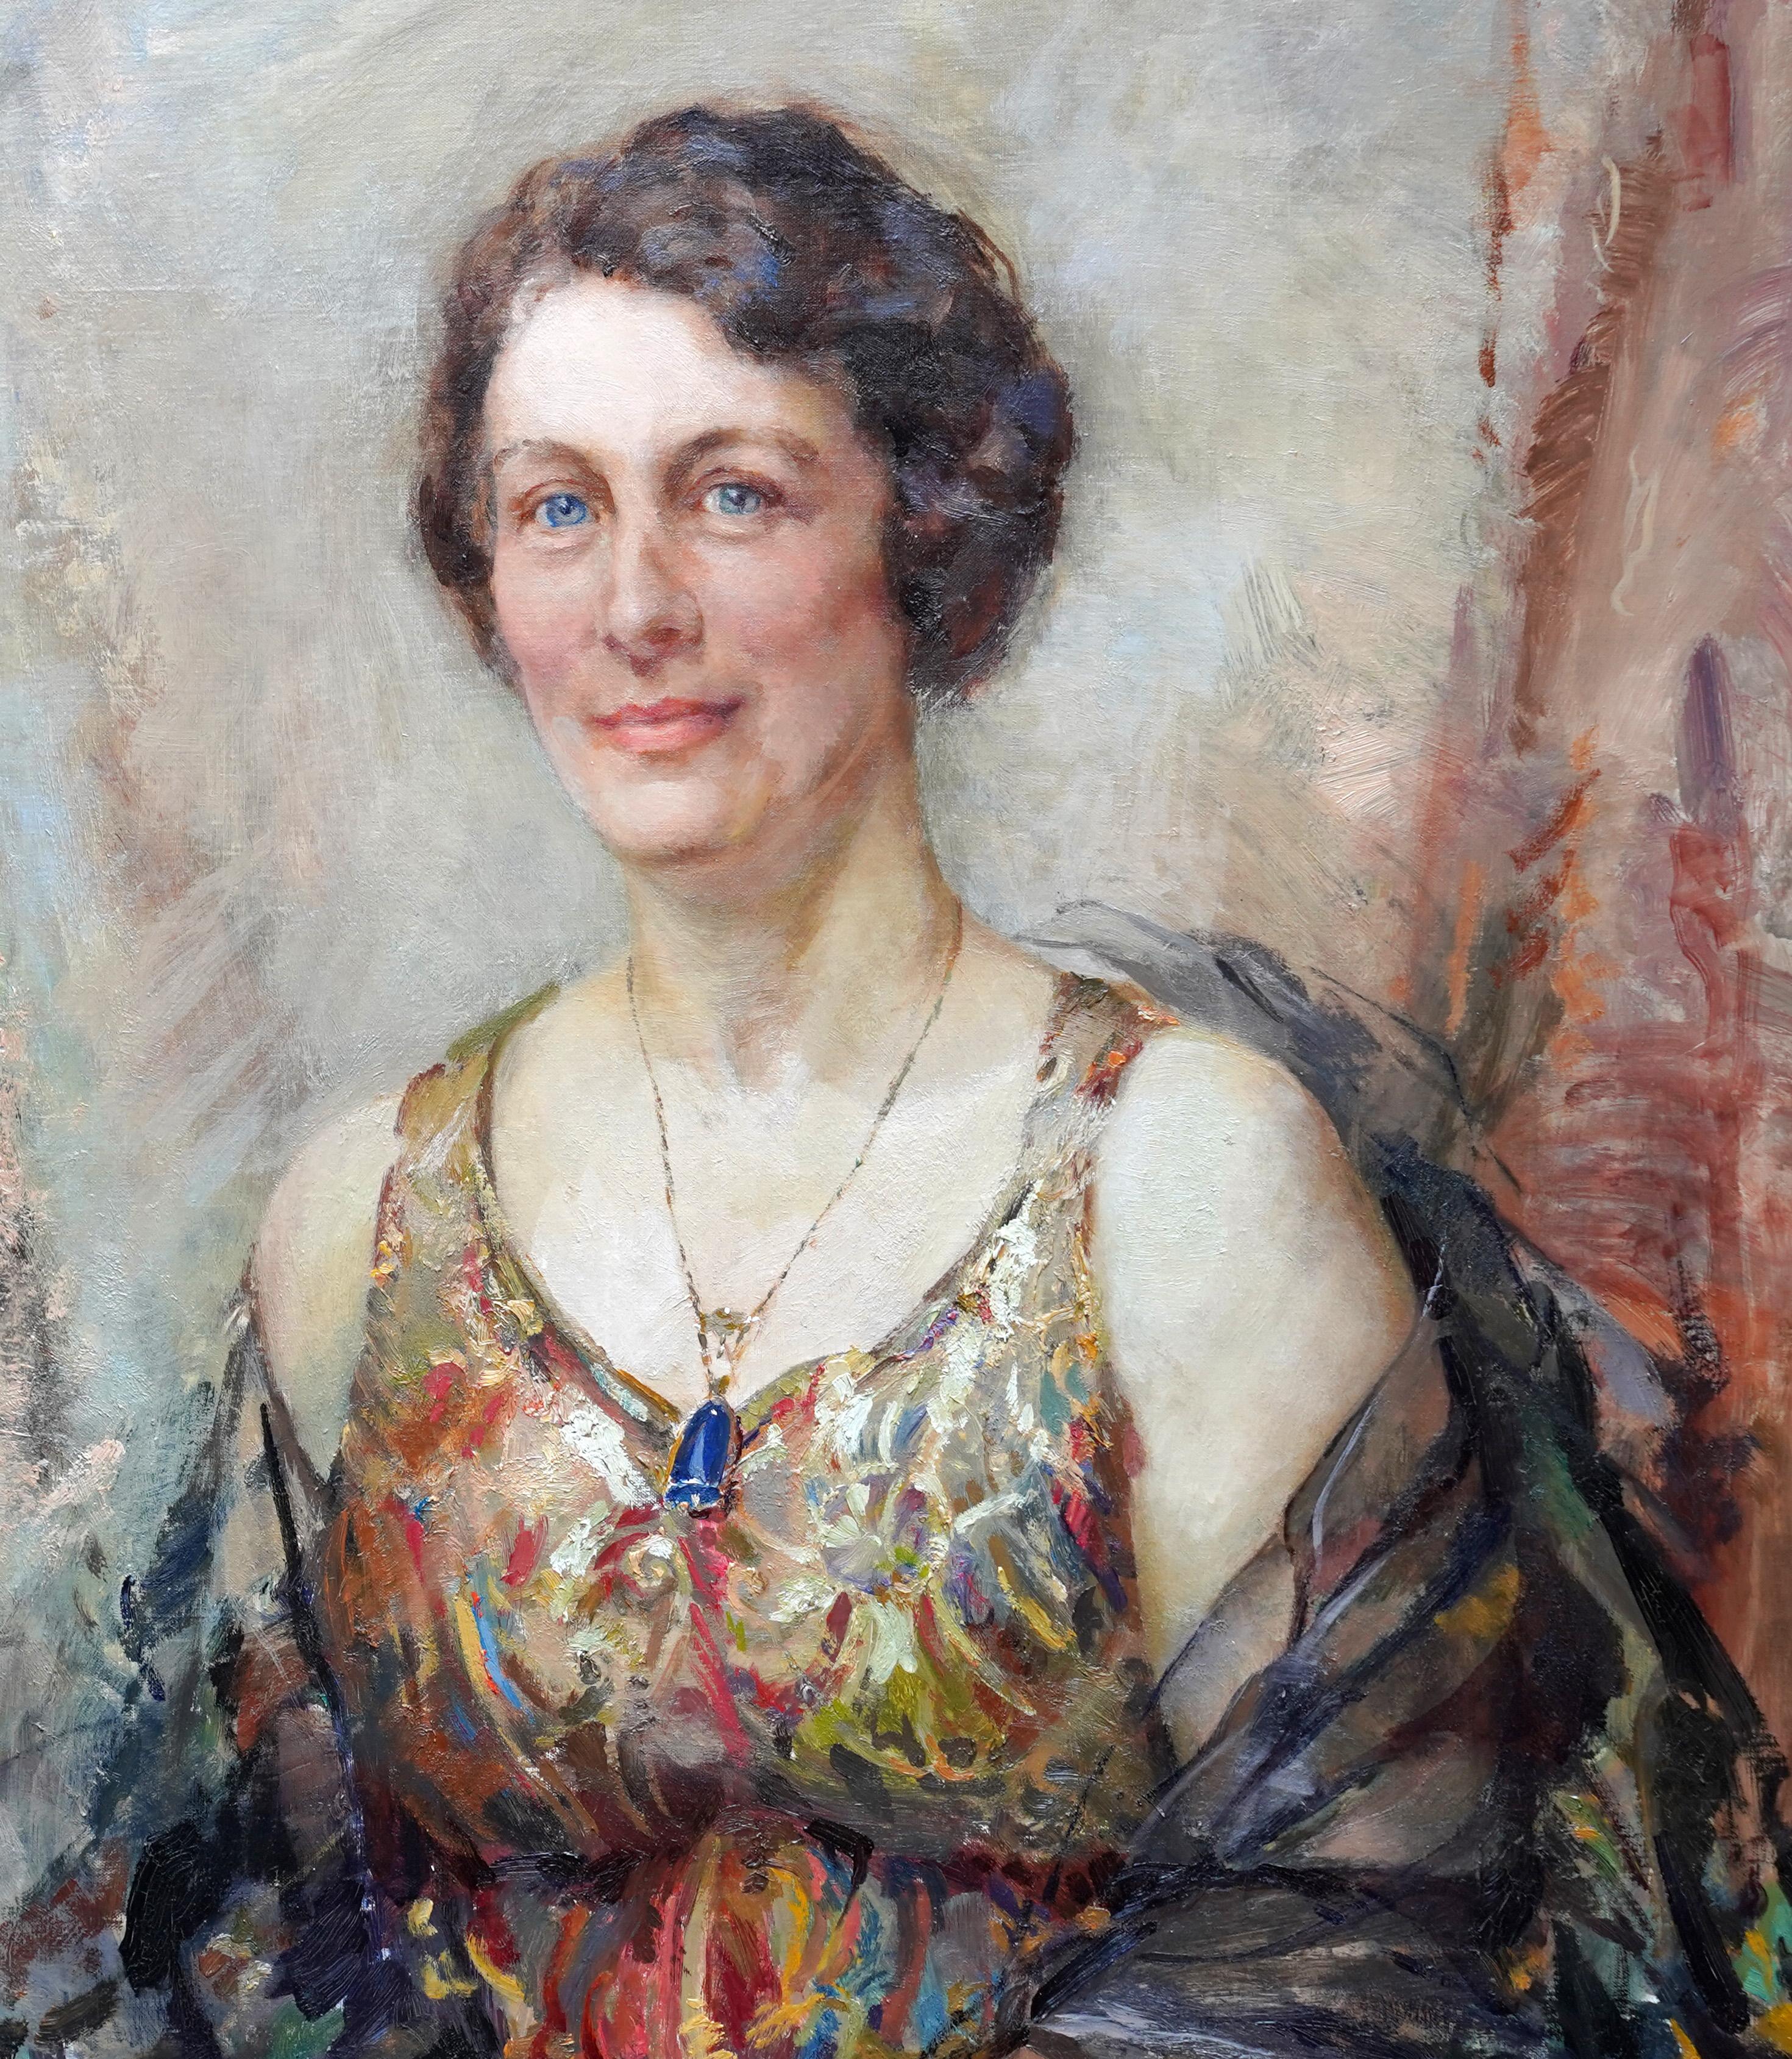 Ce magnifique portrait à l'huile de style Art déco est l'œuvre de l'artiste britannique Elsie March. Elsie était l'une des neuf frères et sœurs, dont huit sont devenus des artistes. Bien qu'Elsie se soit par la suite davantage consacrée à la